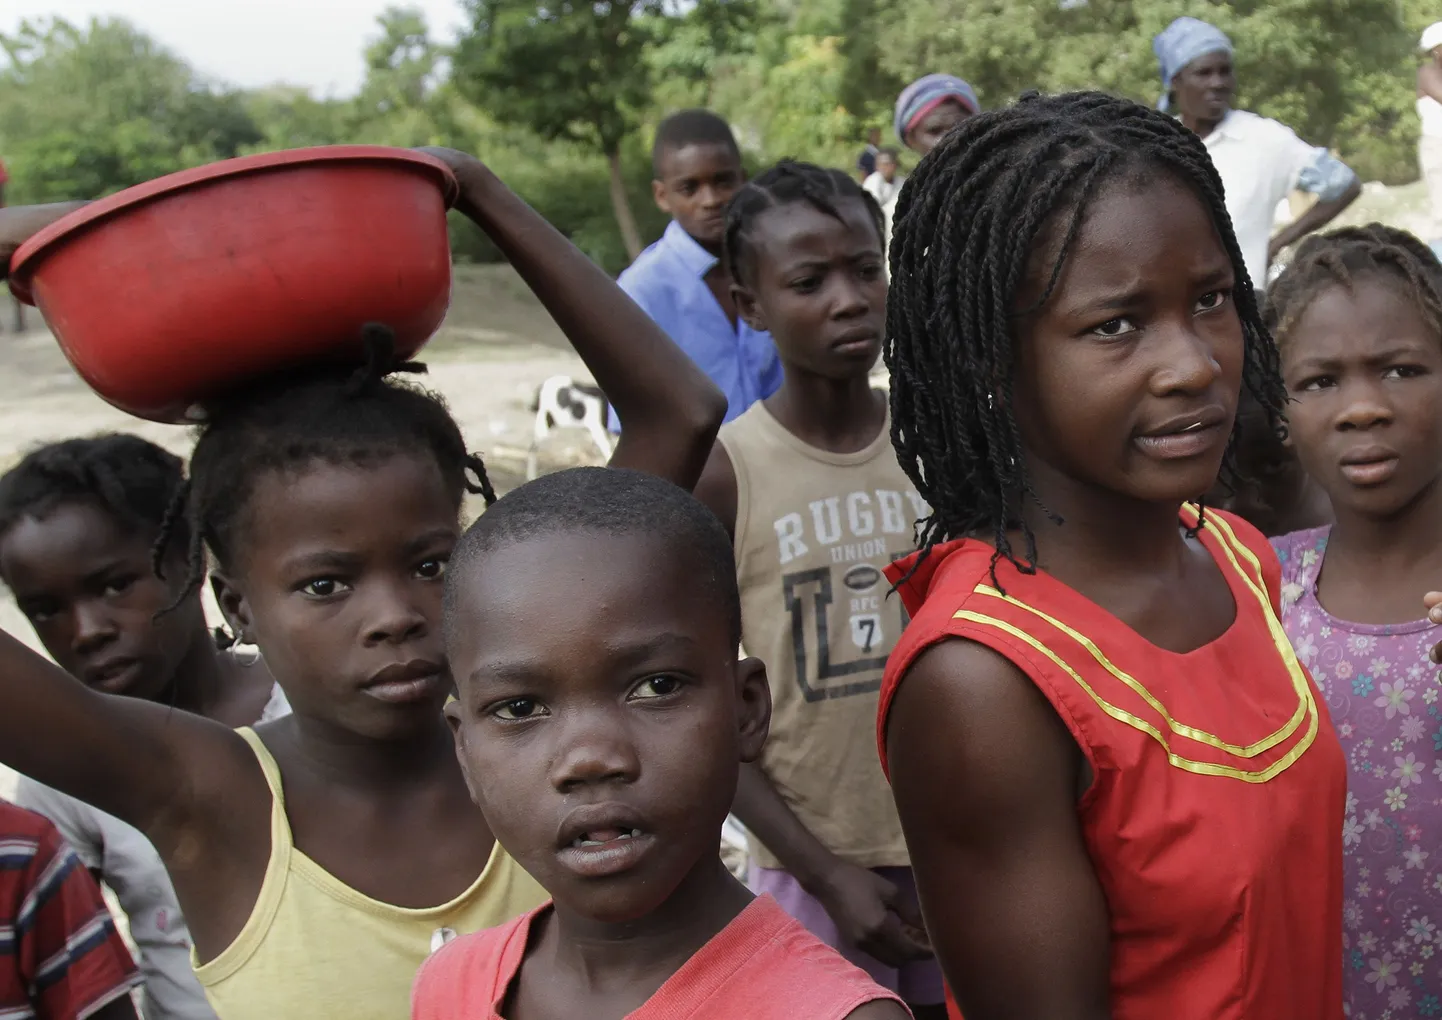 Haiti abiorganisatsioon osutus pedofiiliagängiks. Fotol Haiti lapsed